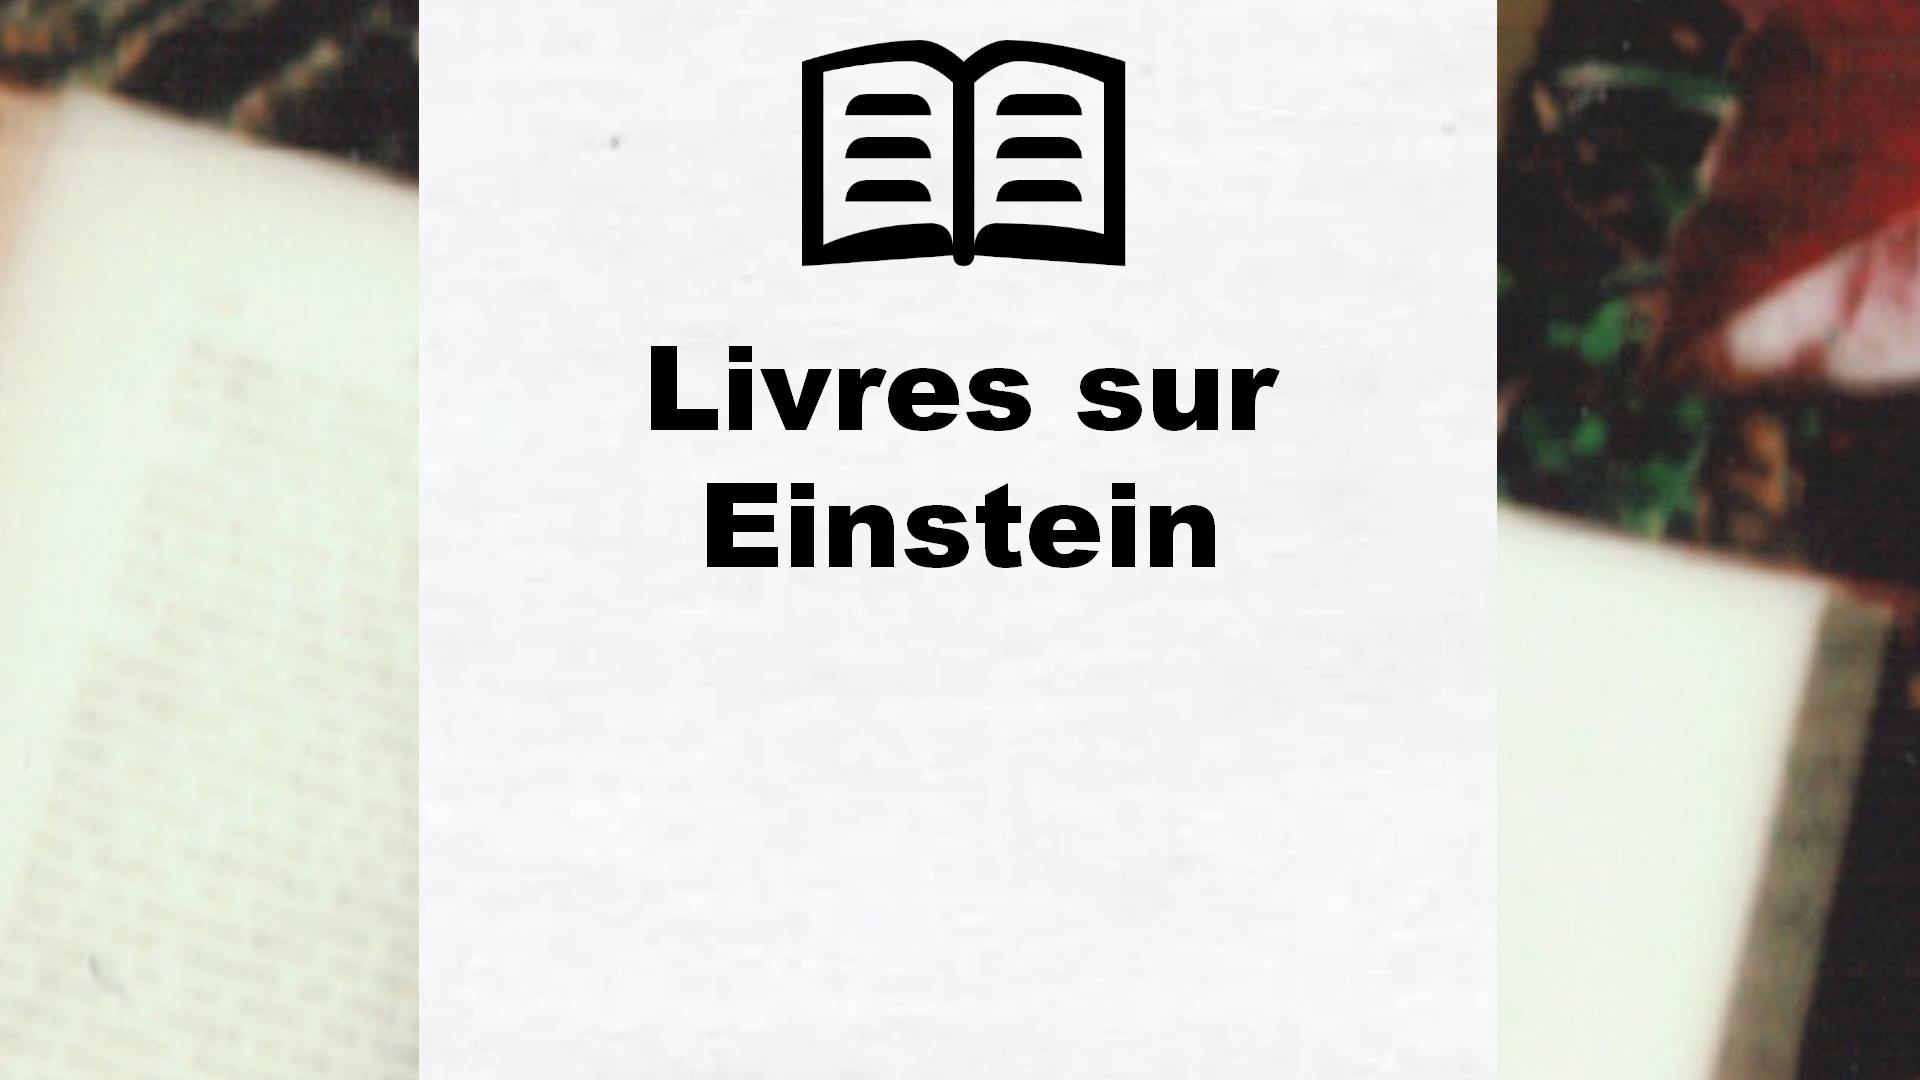 Livres sur Einstein